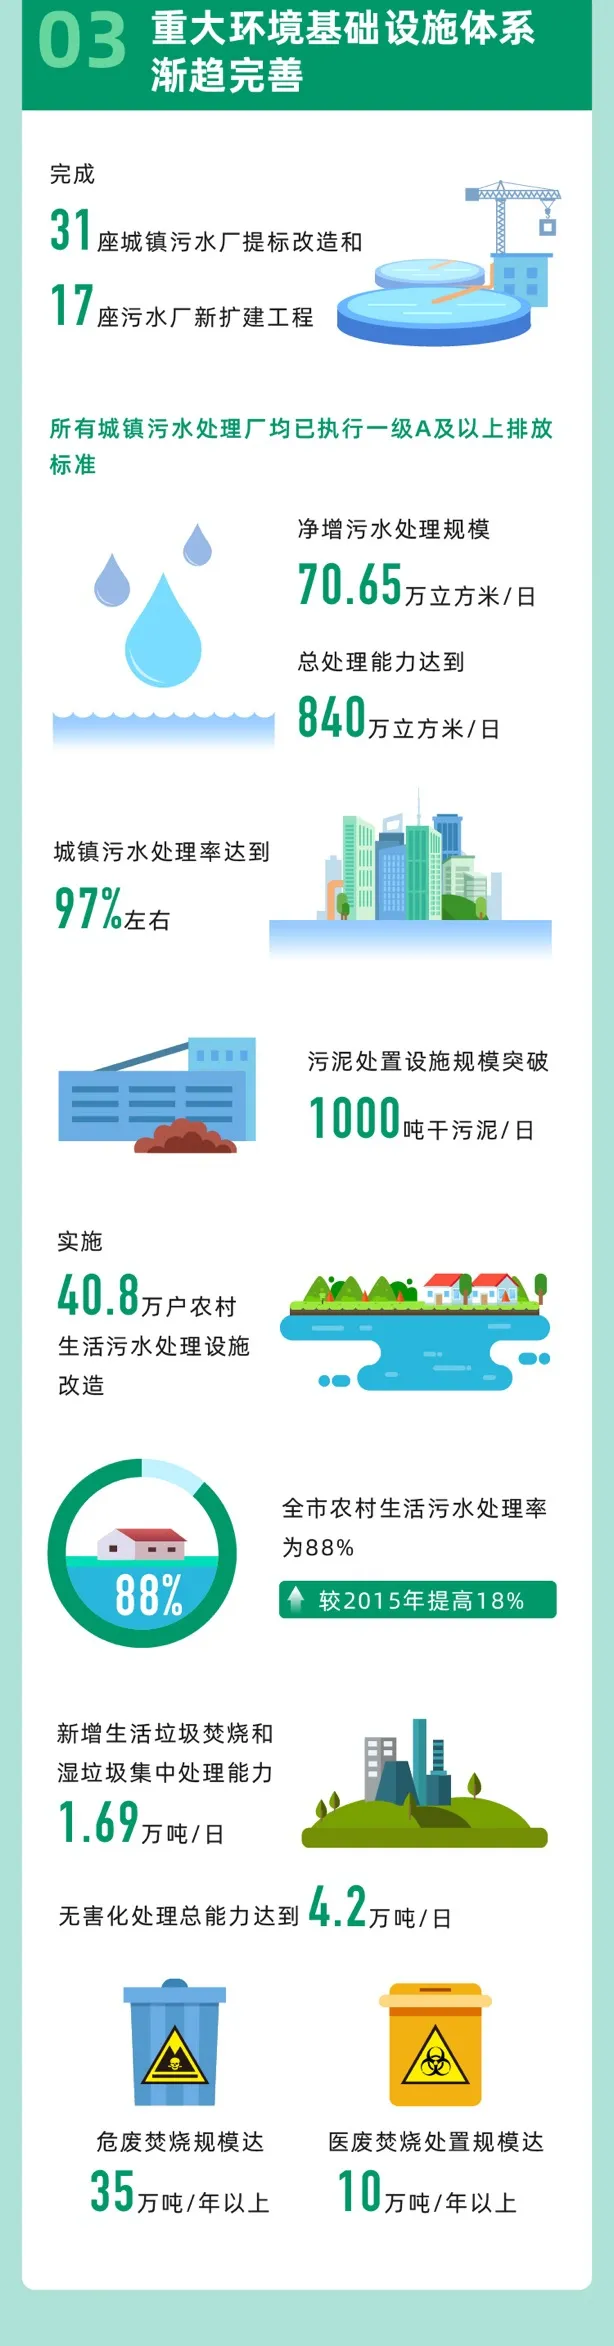 回顾“十三五”，展望“十四五” 上海绿色发展之路将这样走 行业热点 第6张